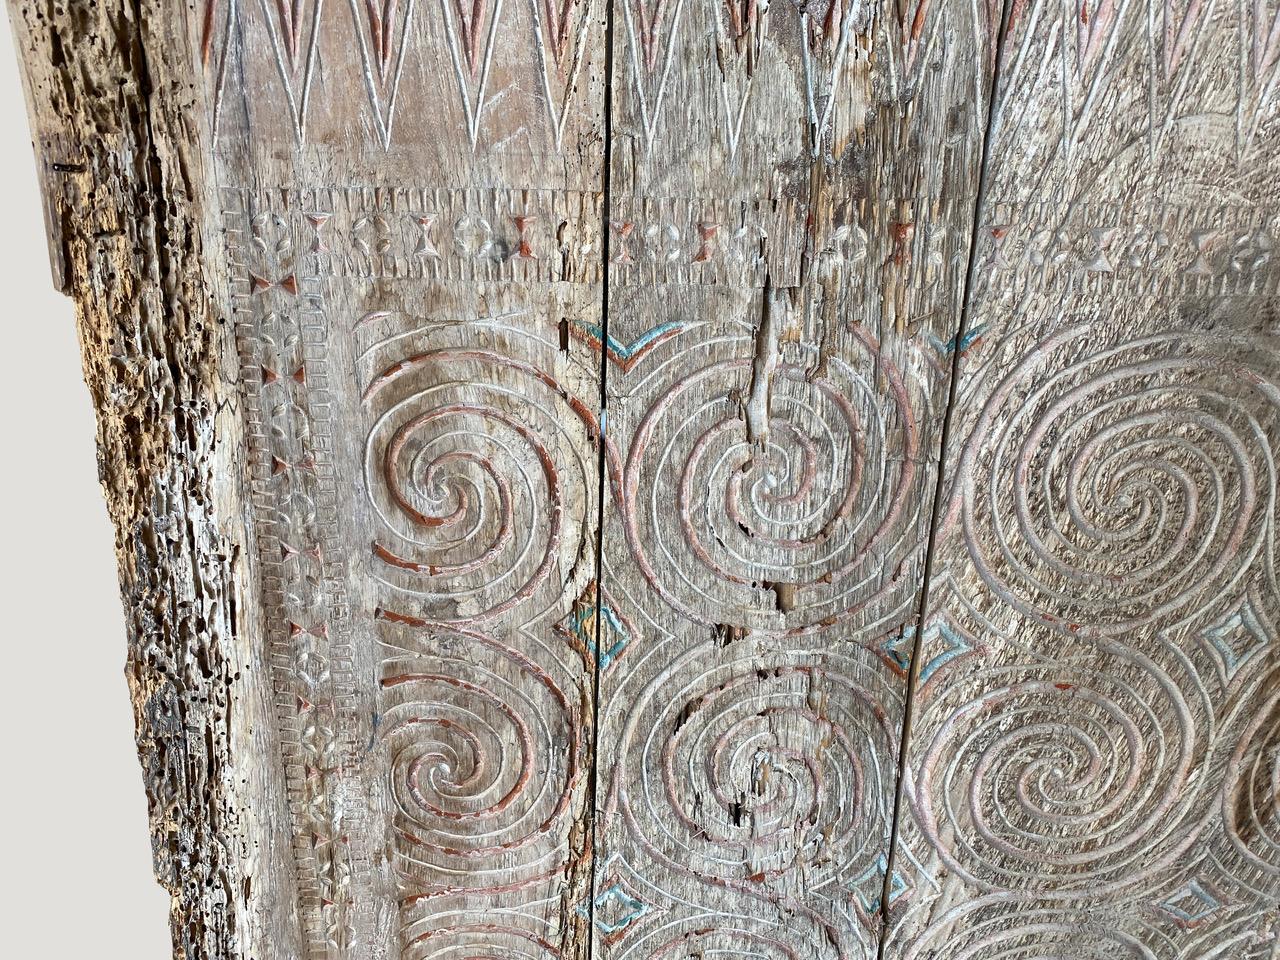 Schöne handgeschnitzte antike Tafel aus Toraja, Sulawesi. Symbolisiert Frieden und Glück.

Diese antike Schnitzerei wurde im Geiste von Wabi-Sabi hergestellt, einer japanischen Philosophie, die besagt, dass die Schönheit in der Unvollkommenheit